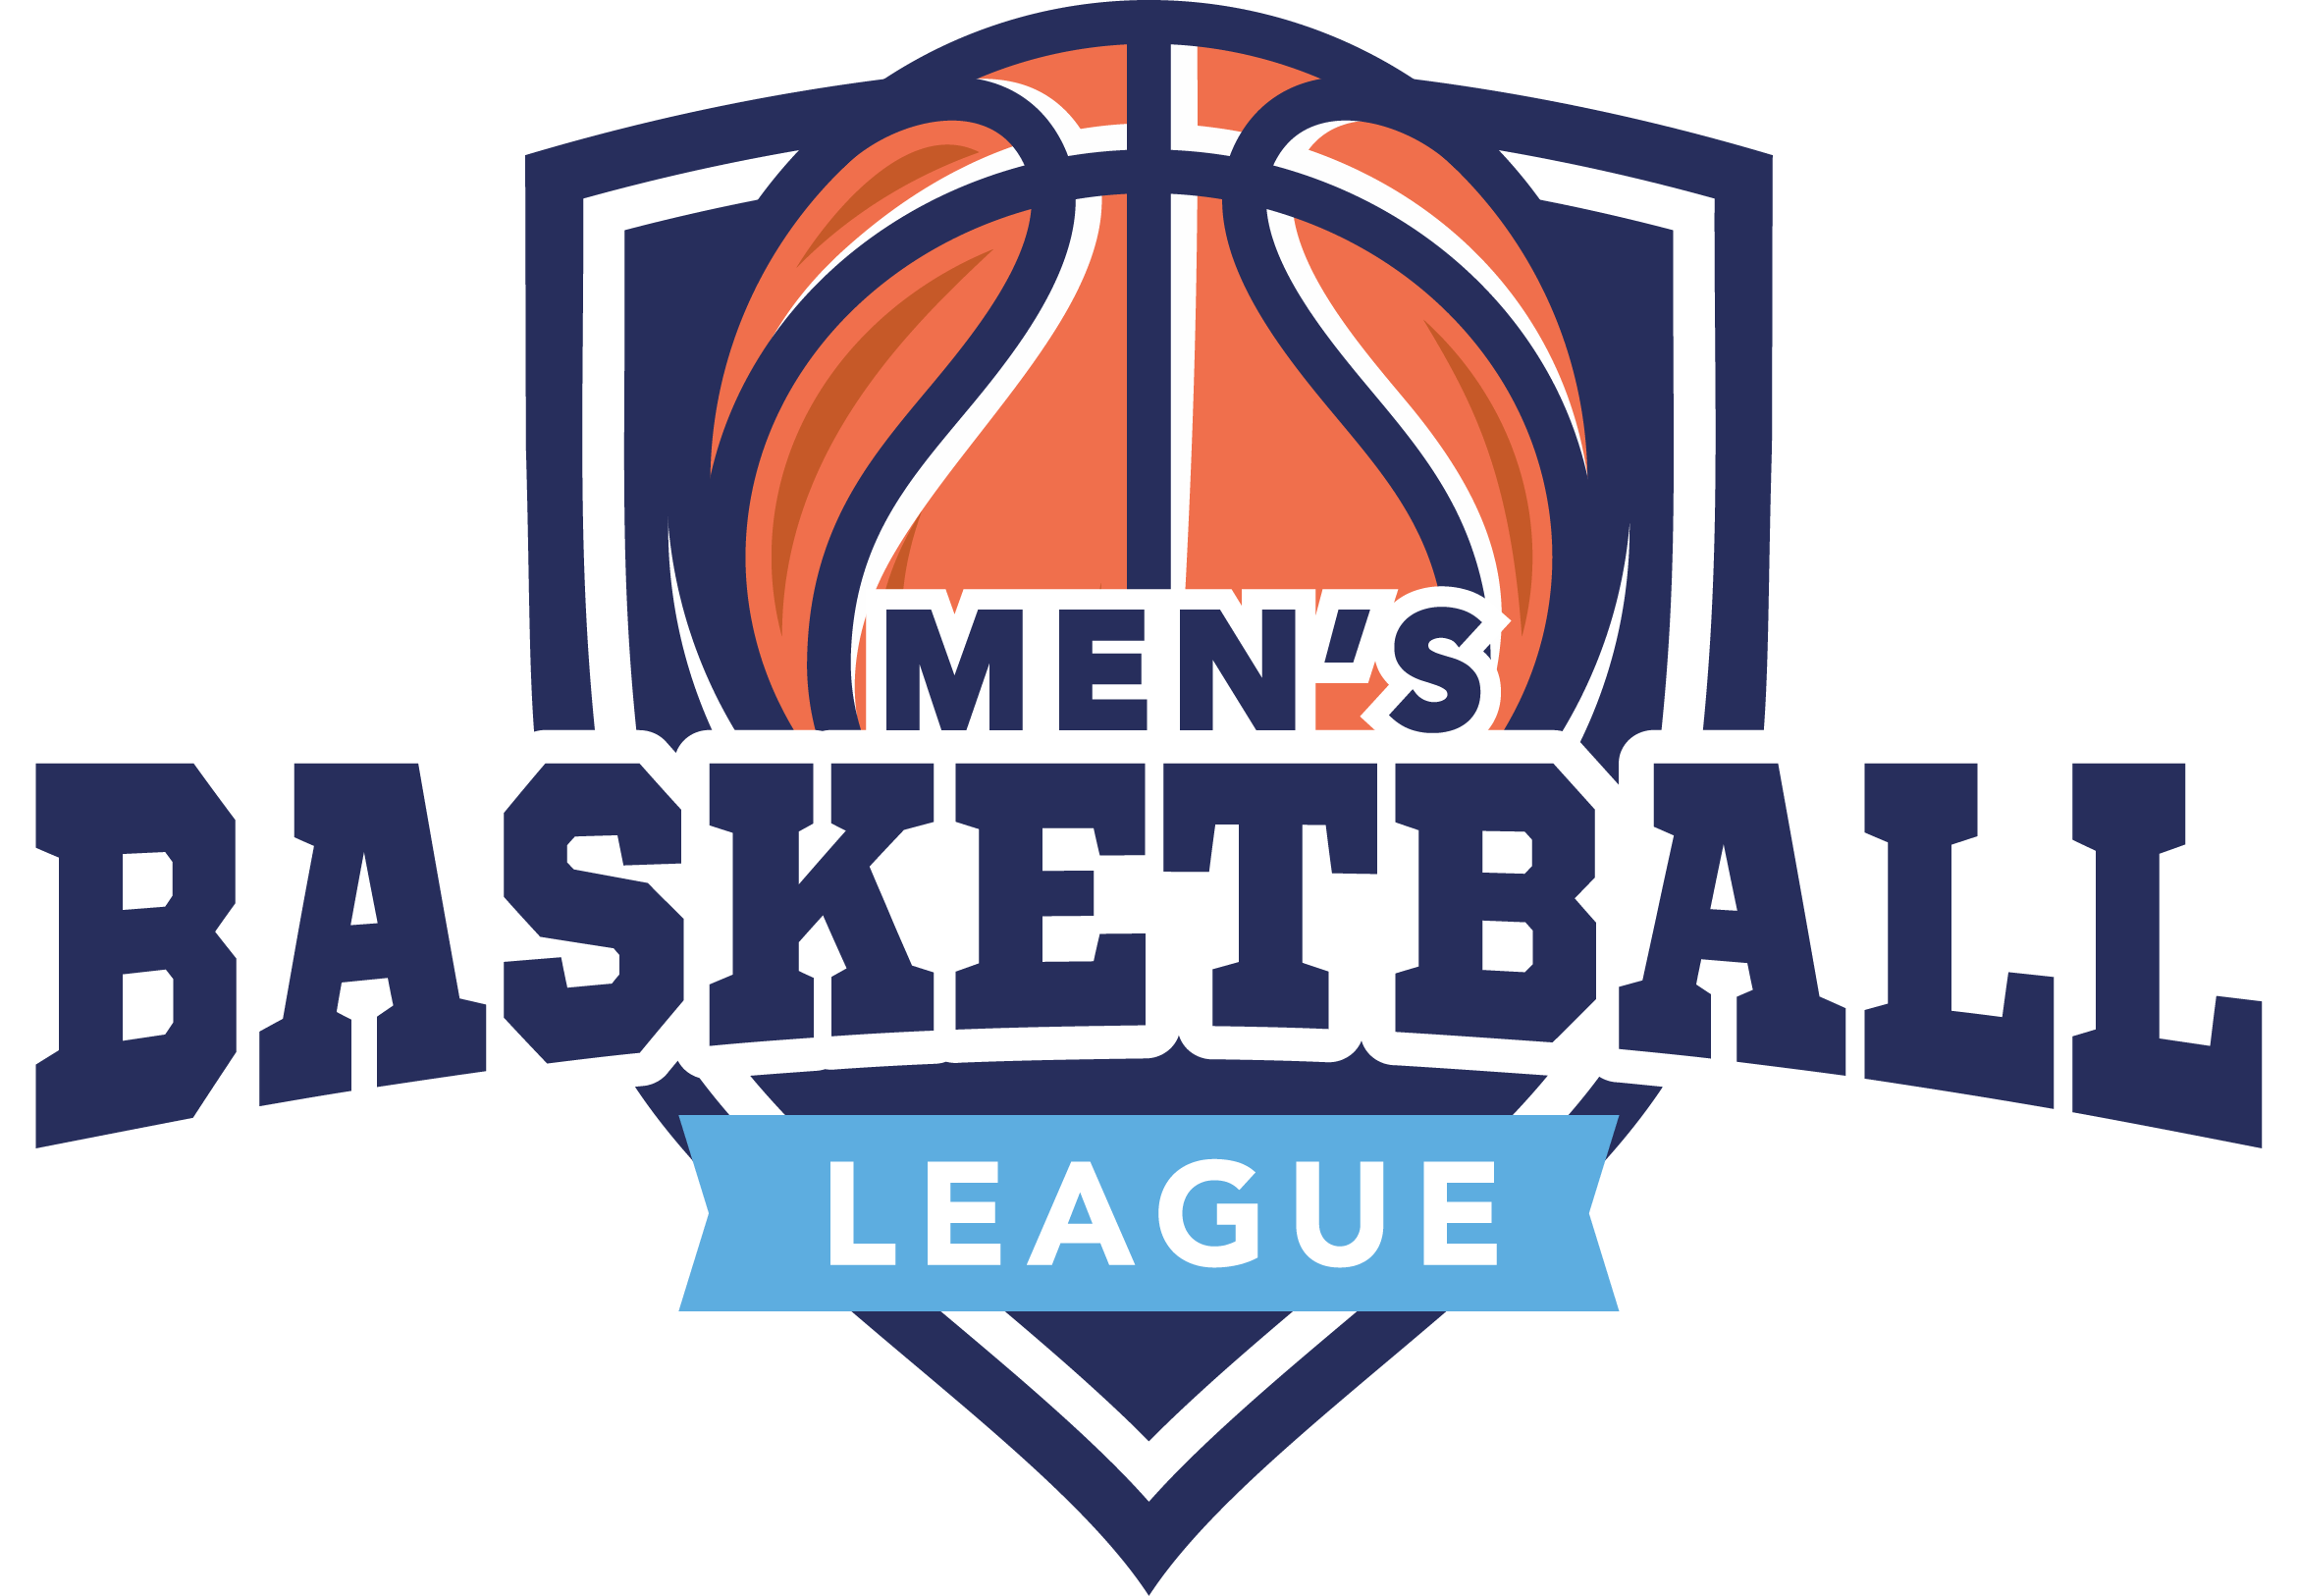 Basketball League Logo - Men's Basketball League | Family Life Center